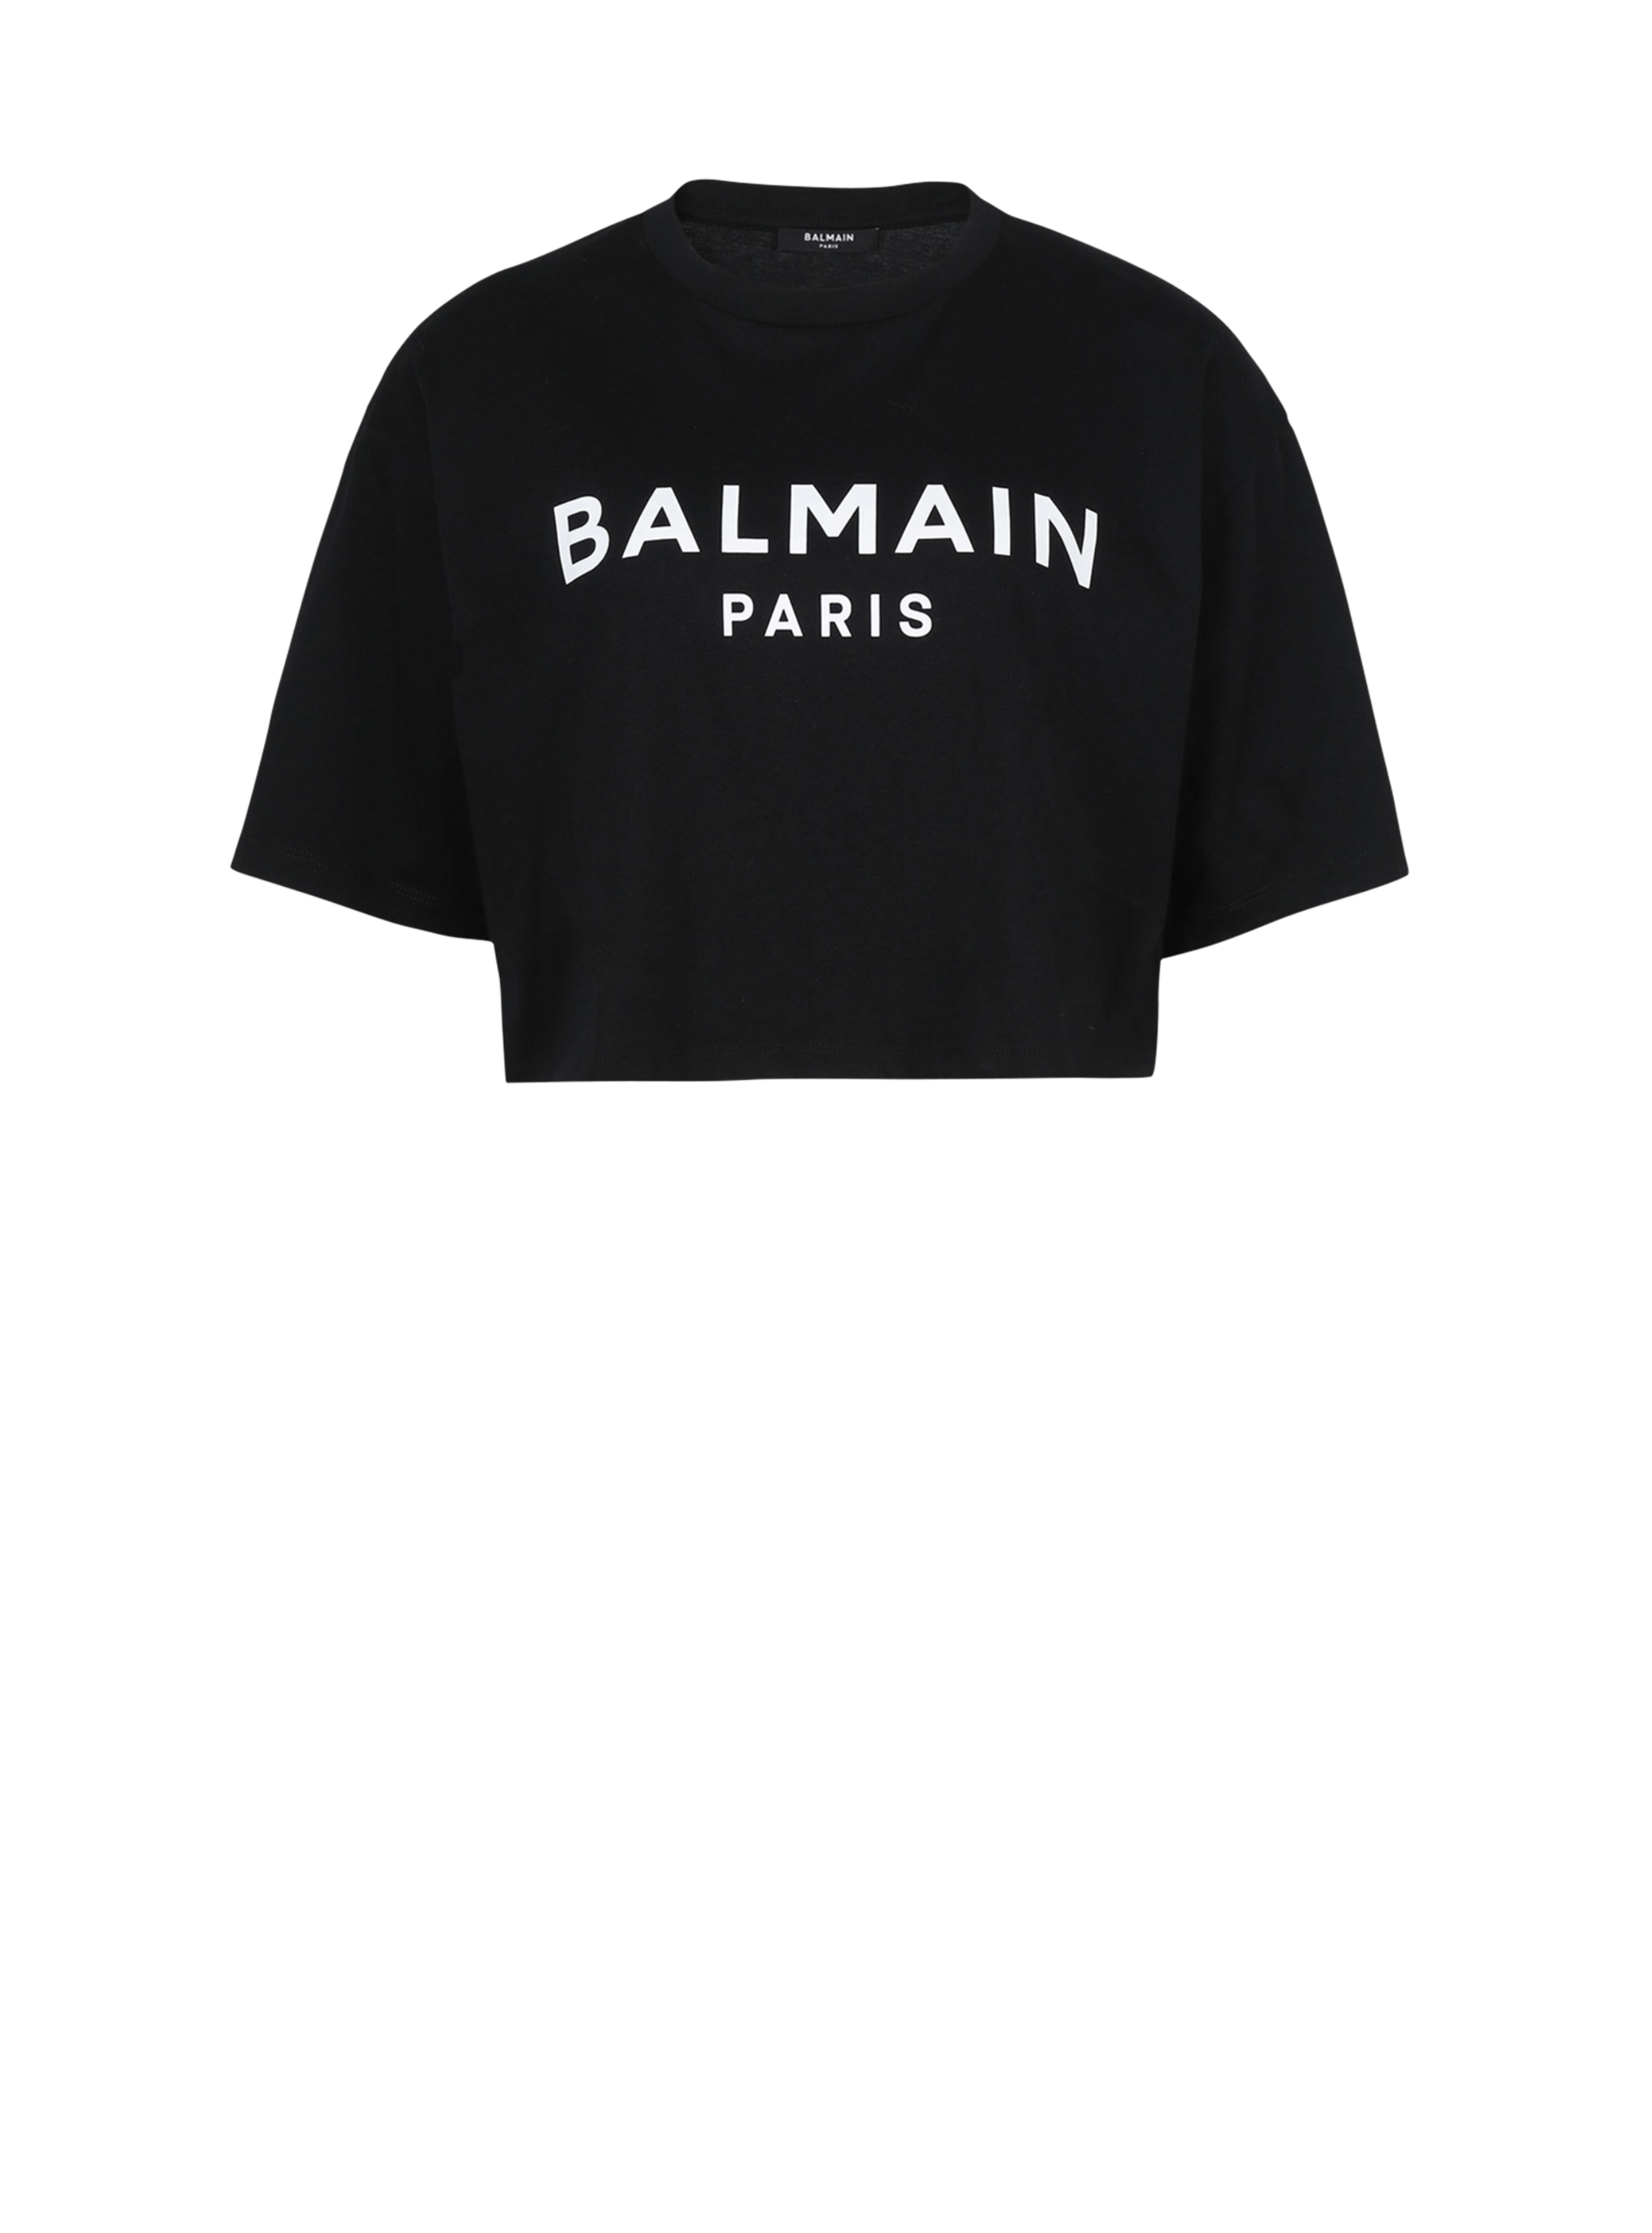 Balmain 로고 프린트 디테일 코튼 쇼트 티셔츠, 검정색